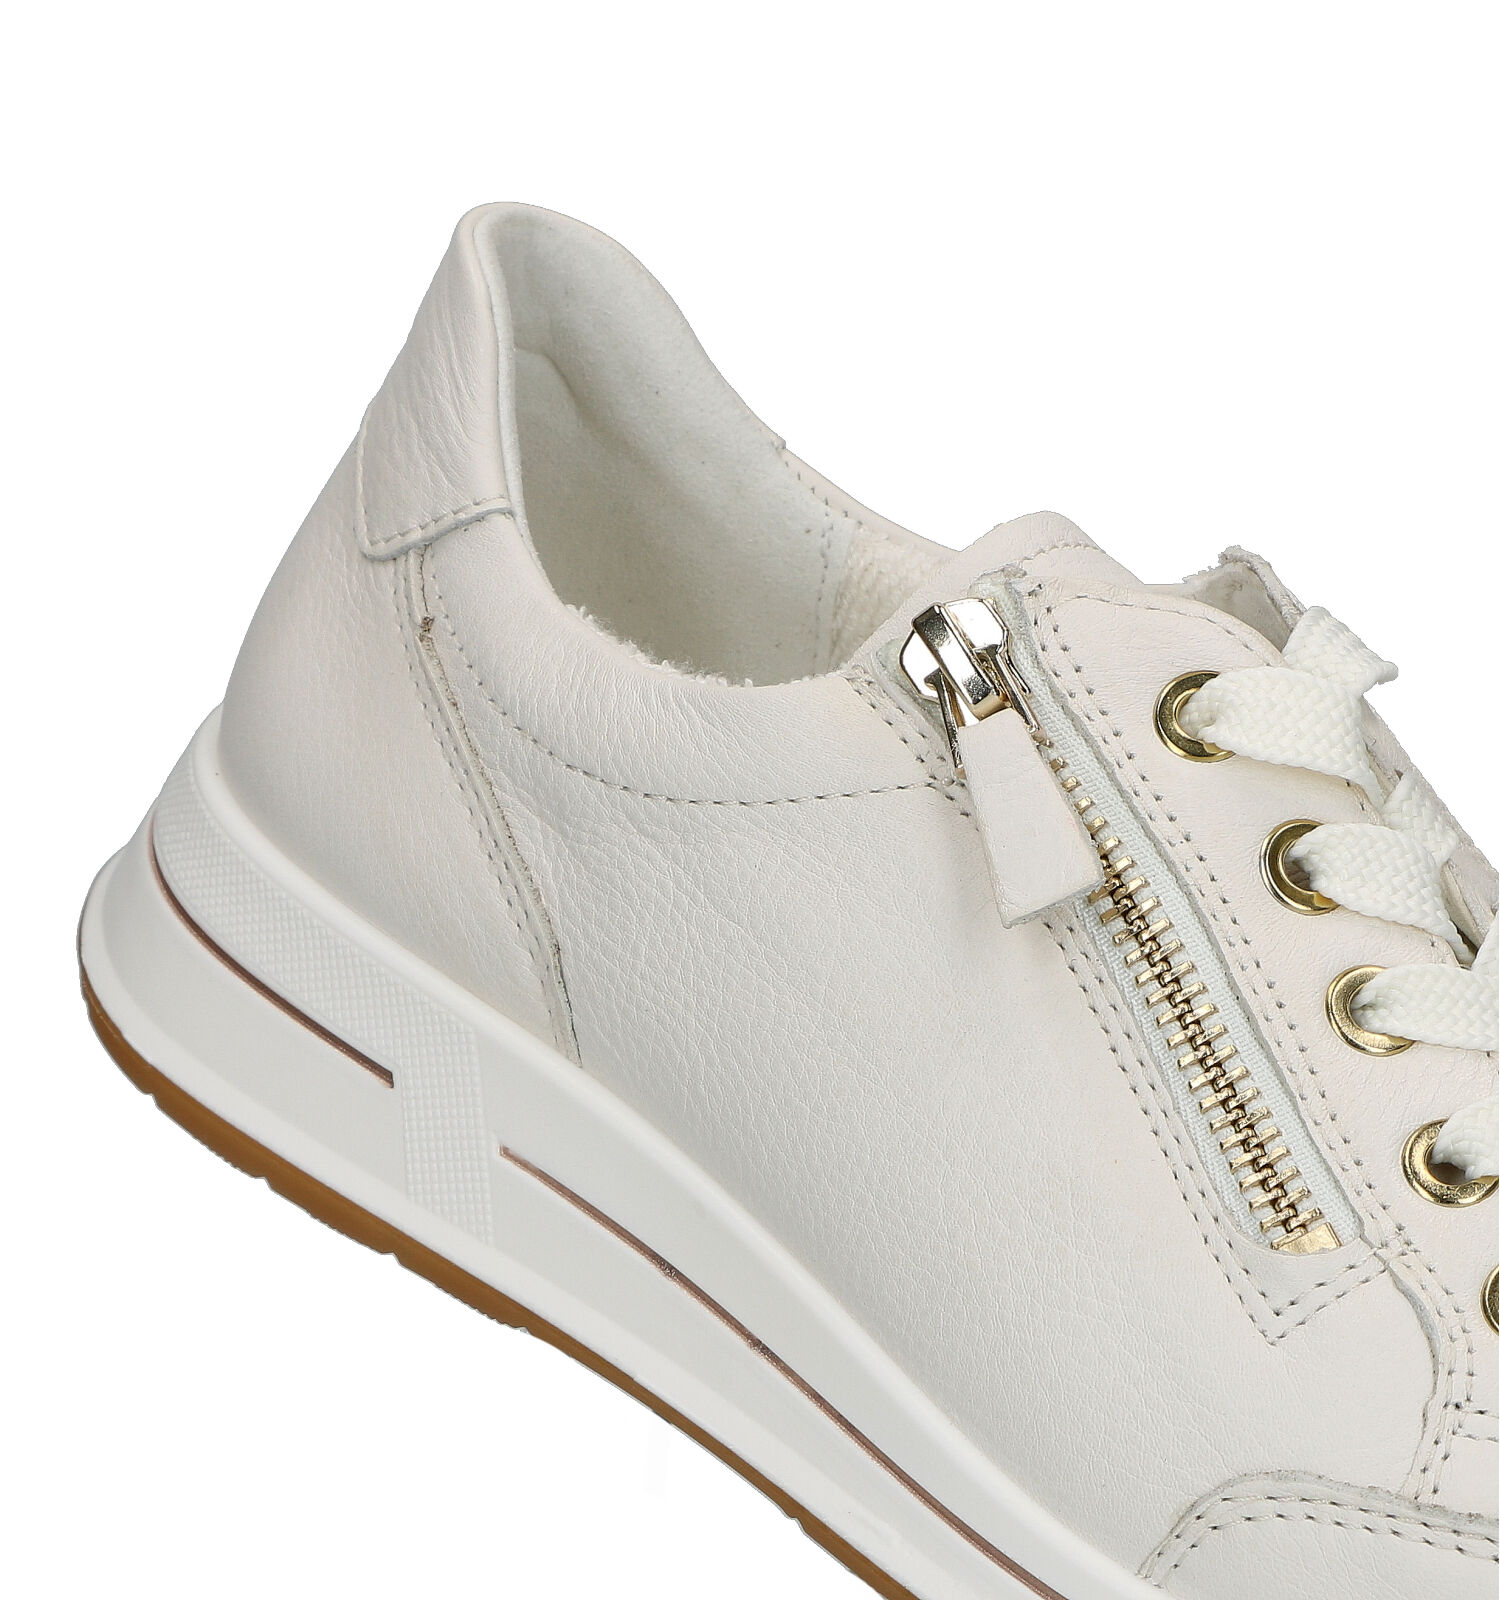 Validatie geïrriteerd raken Nominaal Ara Osaka 2.0 Witte Sneakers | Dames Lage schoenen